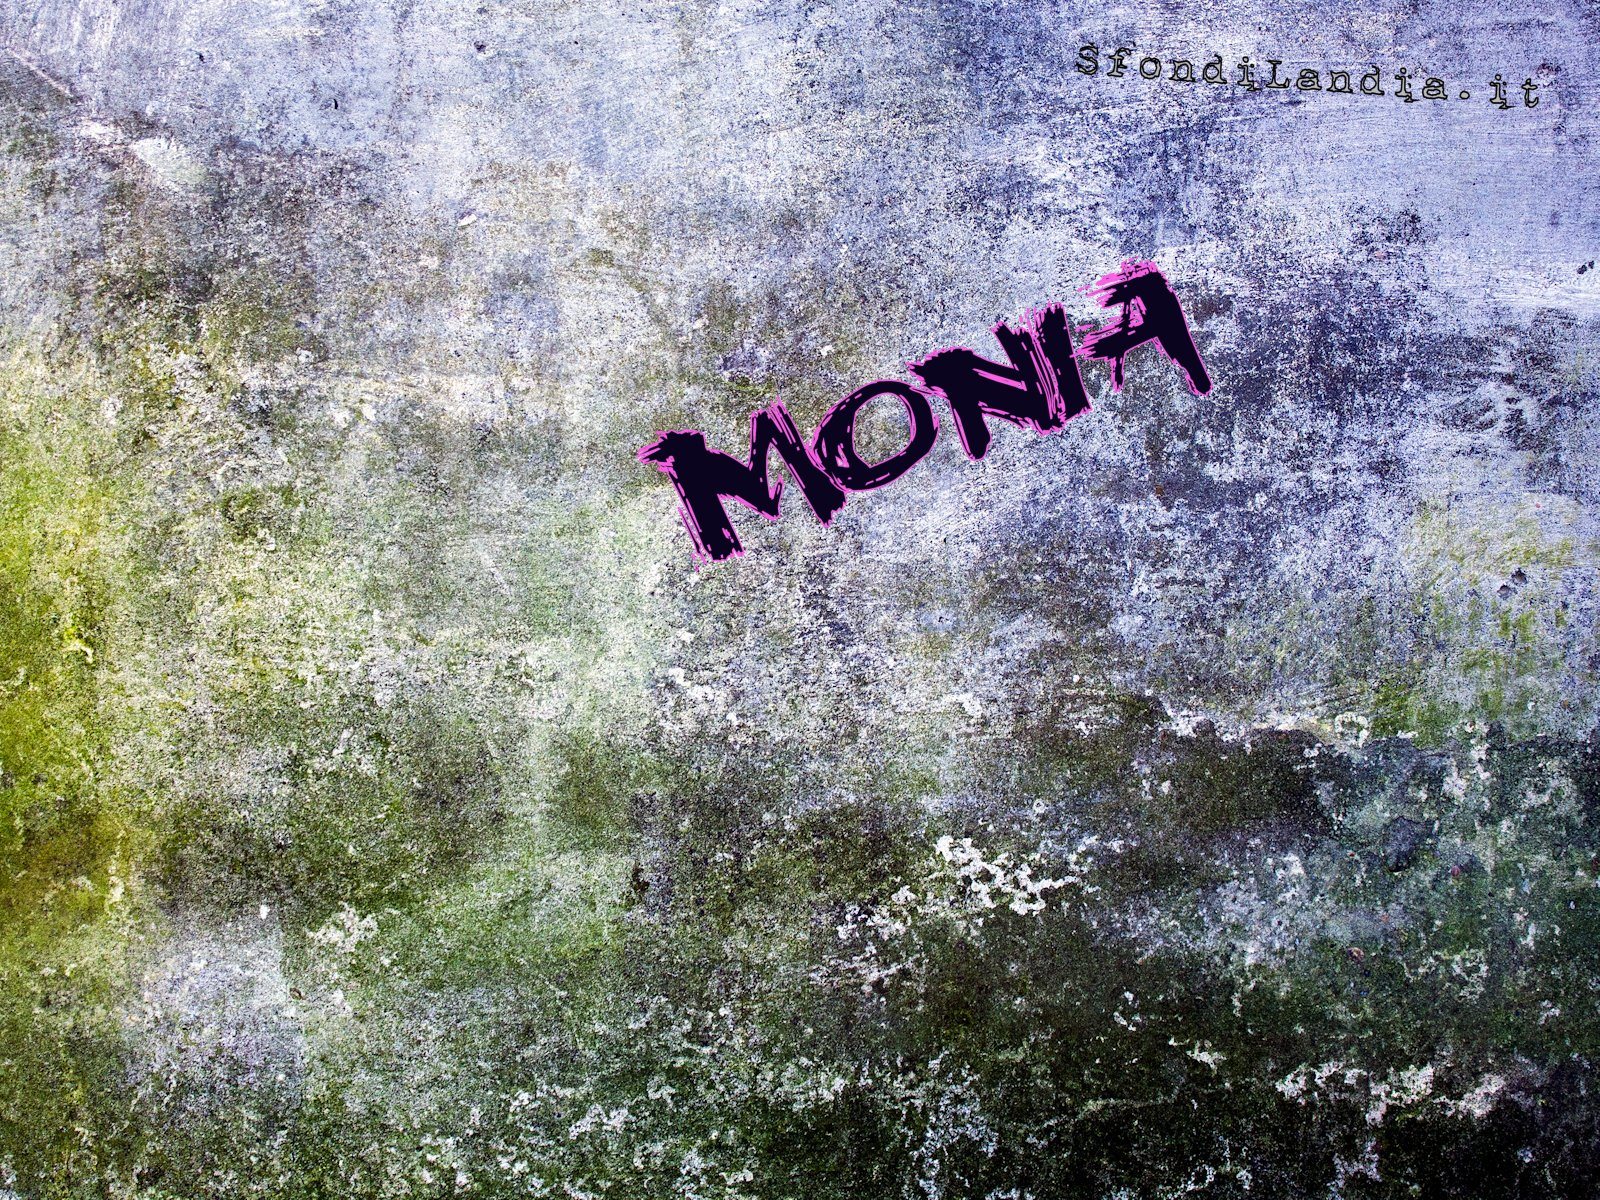 Monia